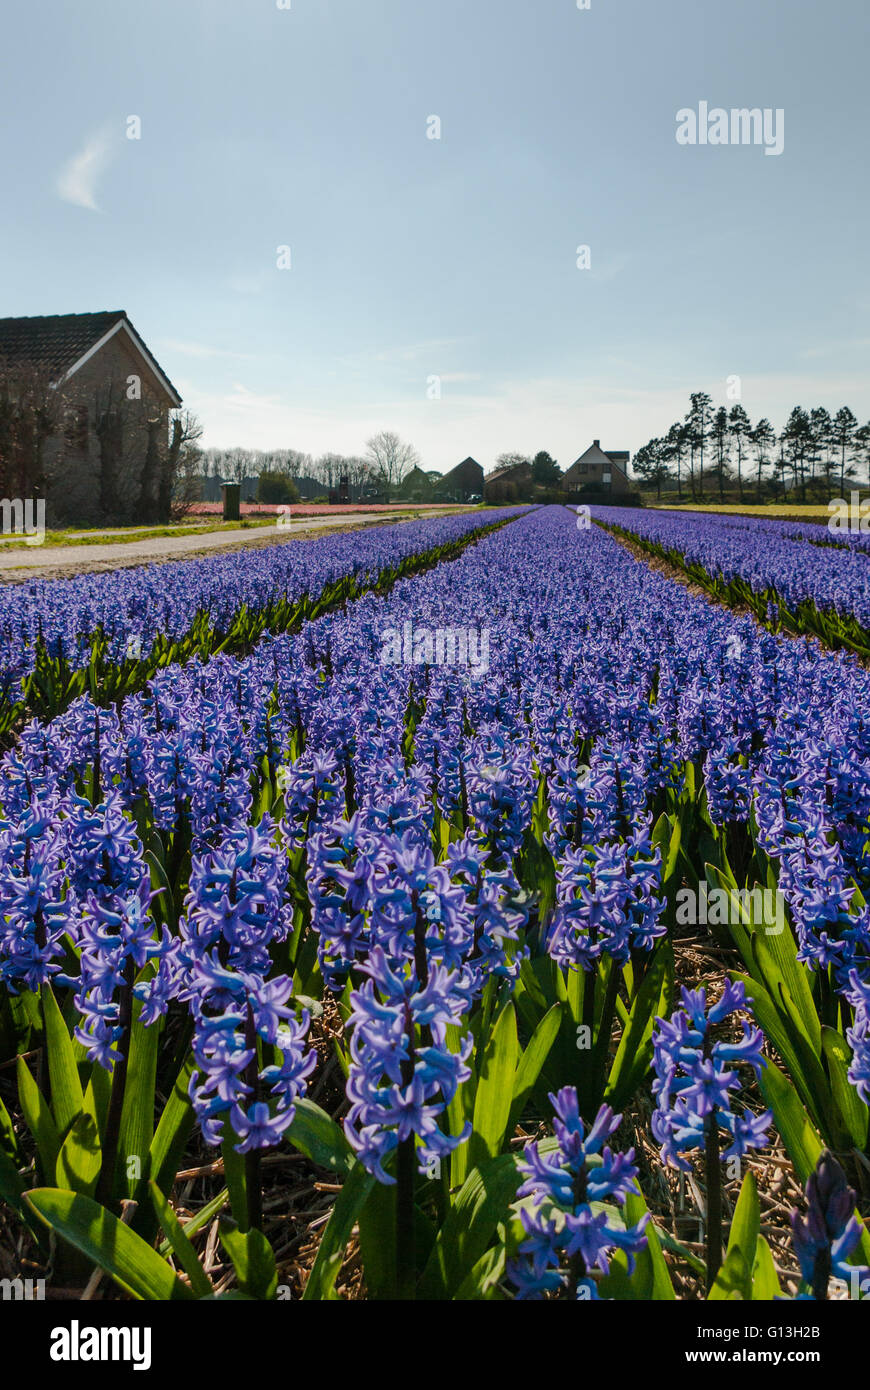 Blu porpora giacinti di Campo dei Fiori in piena fioritura, con la prospettiva delle linee guida per l'orizzonte, e case coloniche - Ritratto Foto Stock